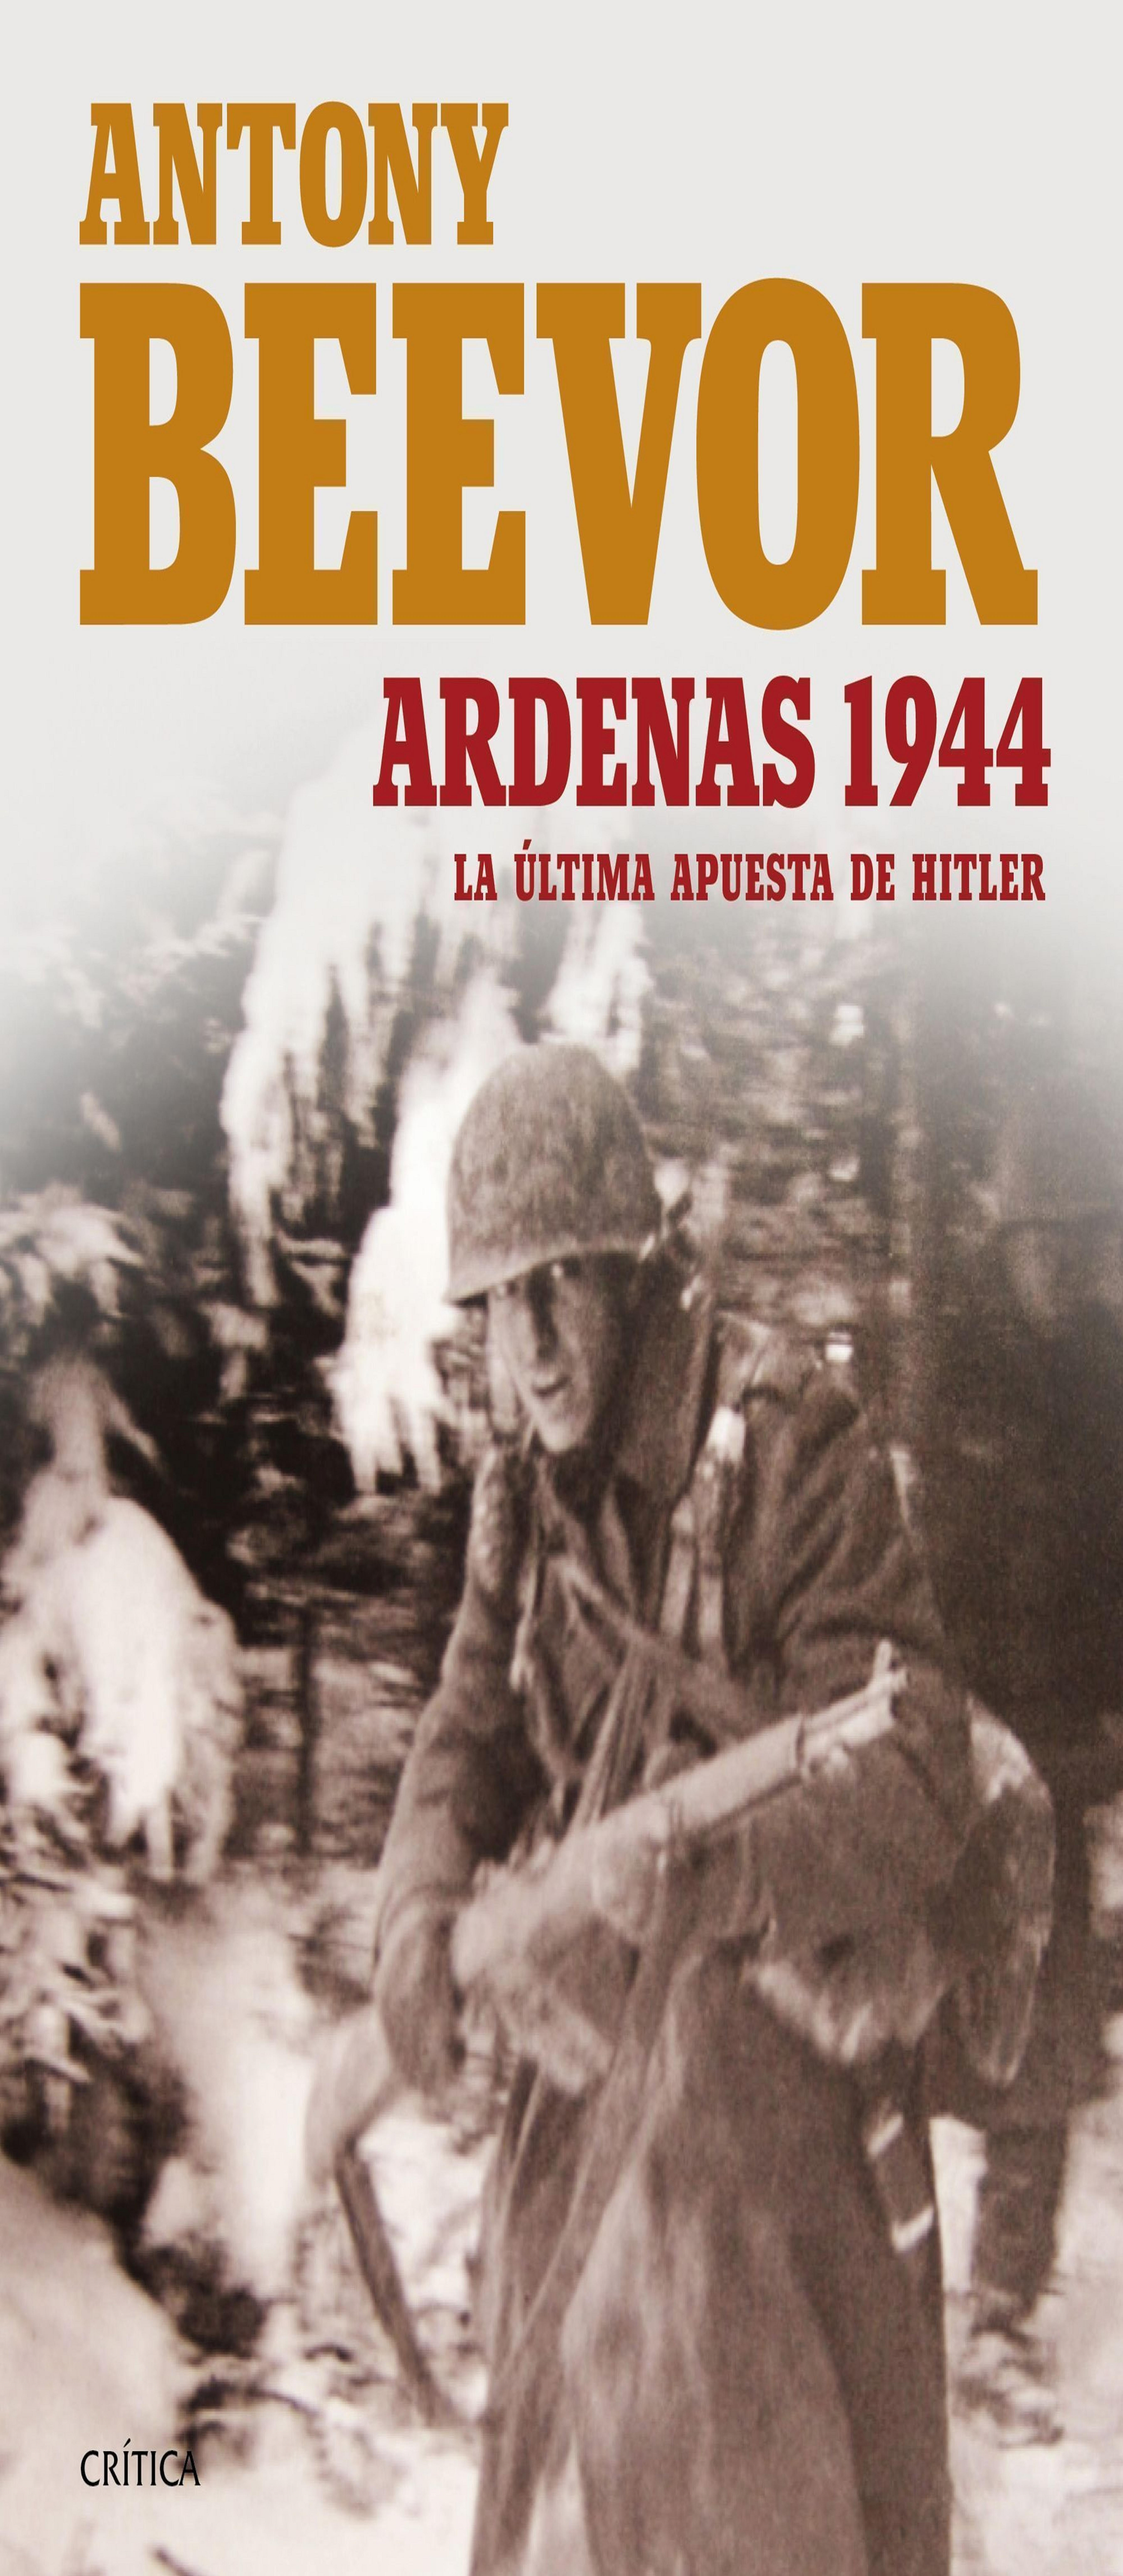 ARDENAS 1944. LA ÚLTIMA APUESTA DE HITLER